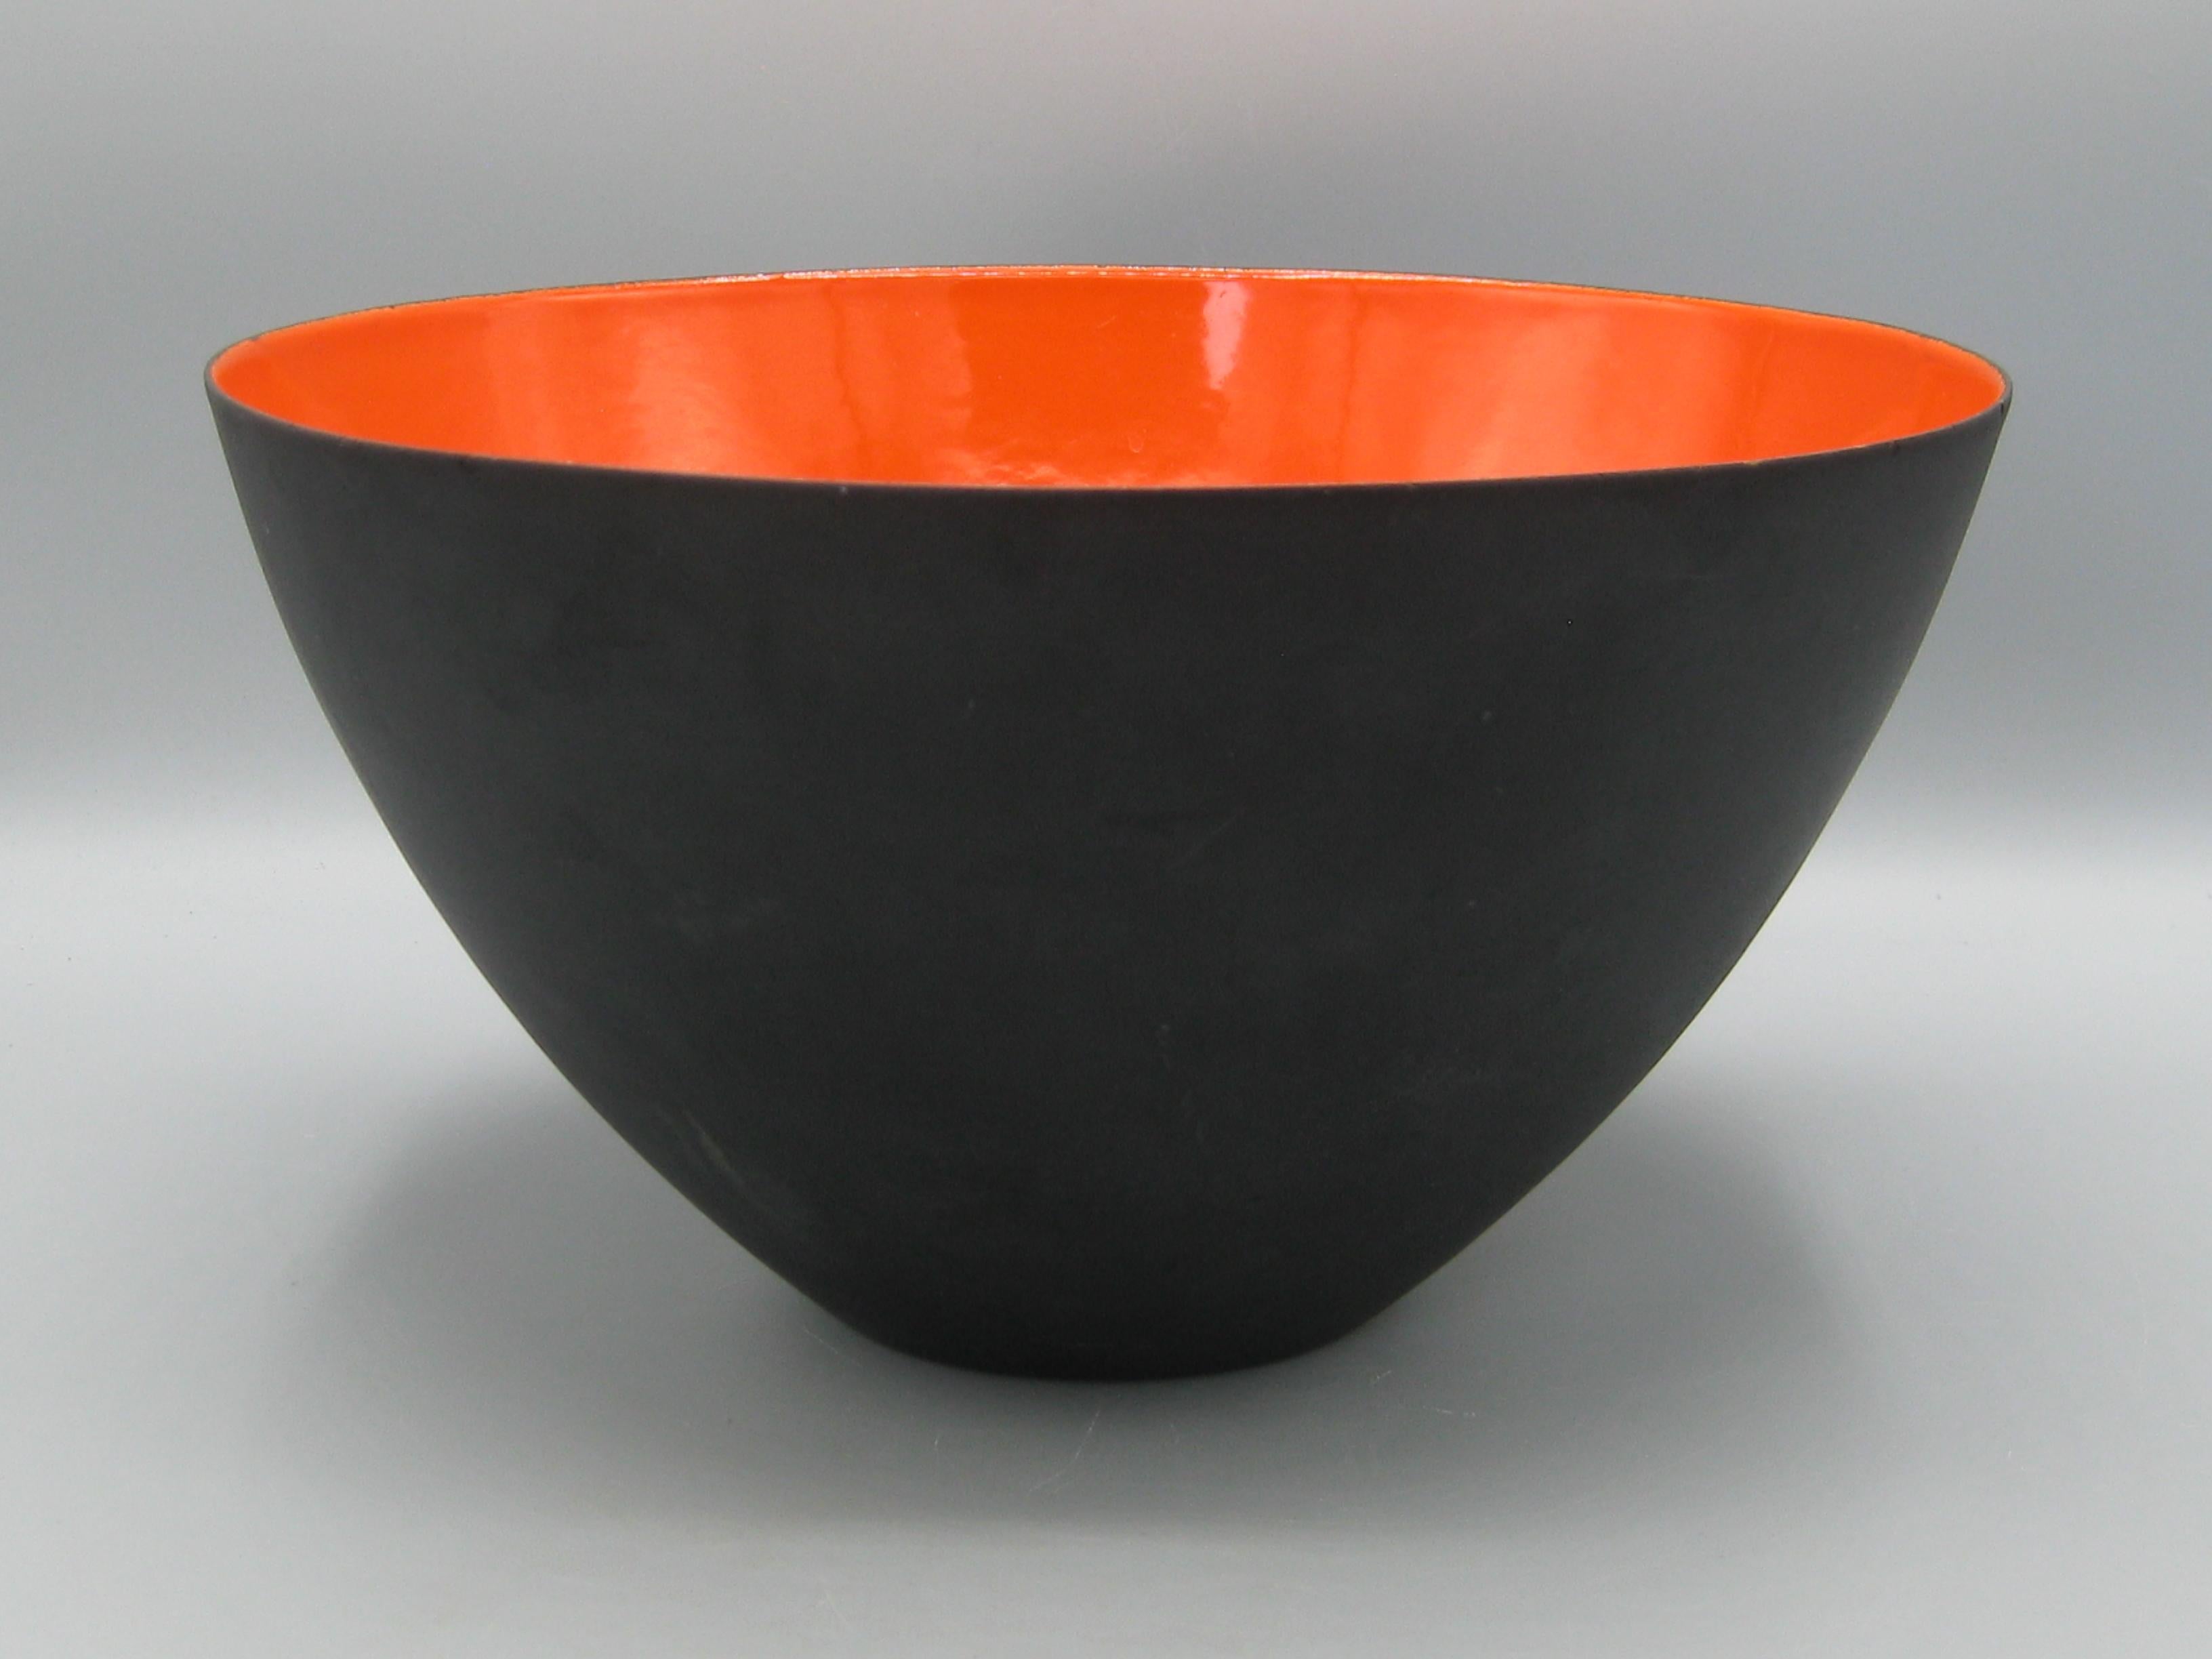 Danish Modernist 50's Krenit Bowl Herbert Krenchel Orange Enamel & Black Denmark BIG! For Sale